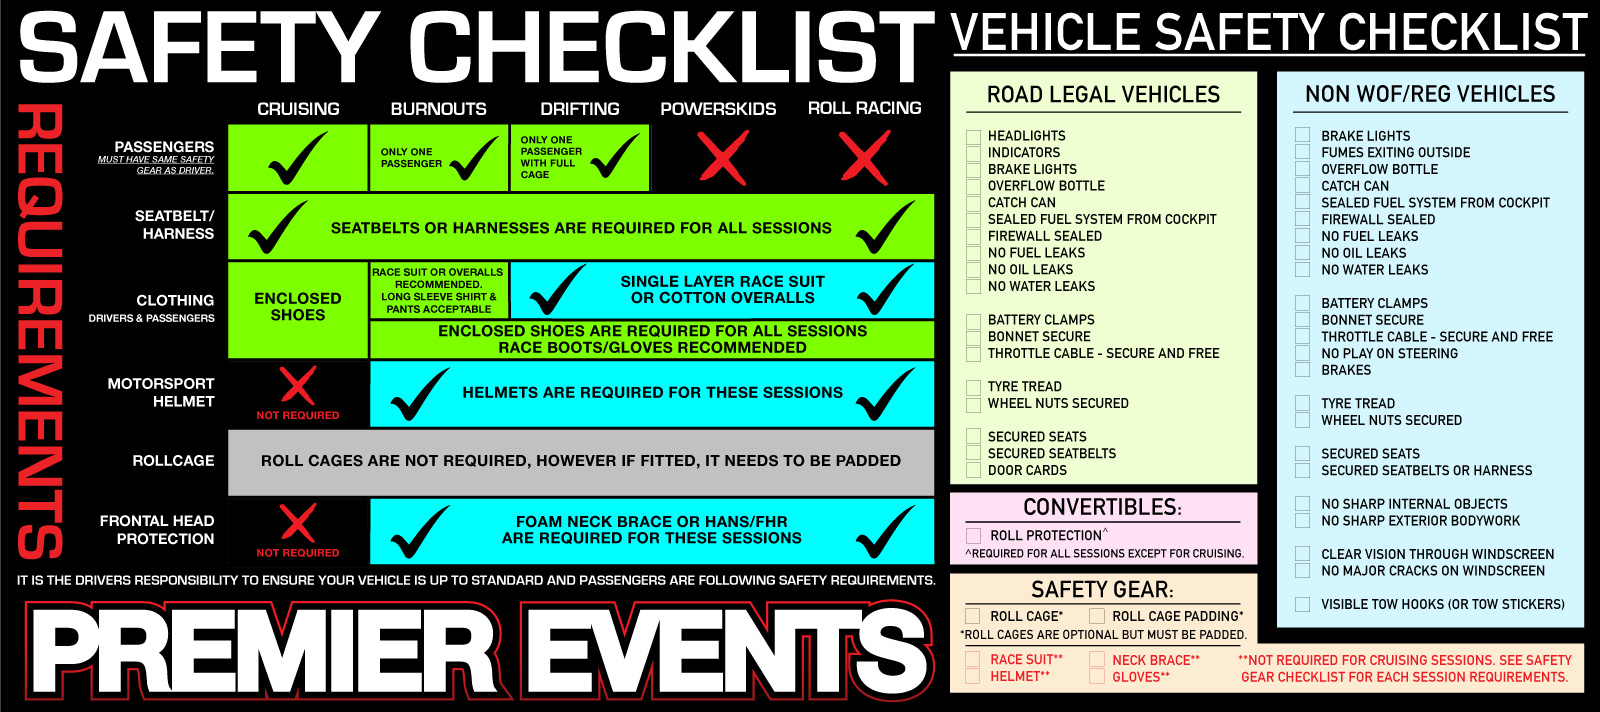 Safety Checklist